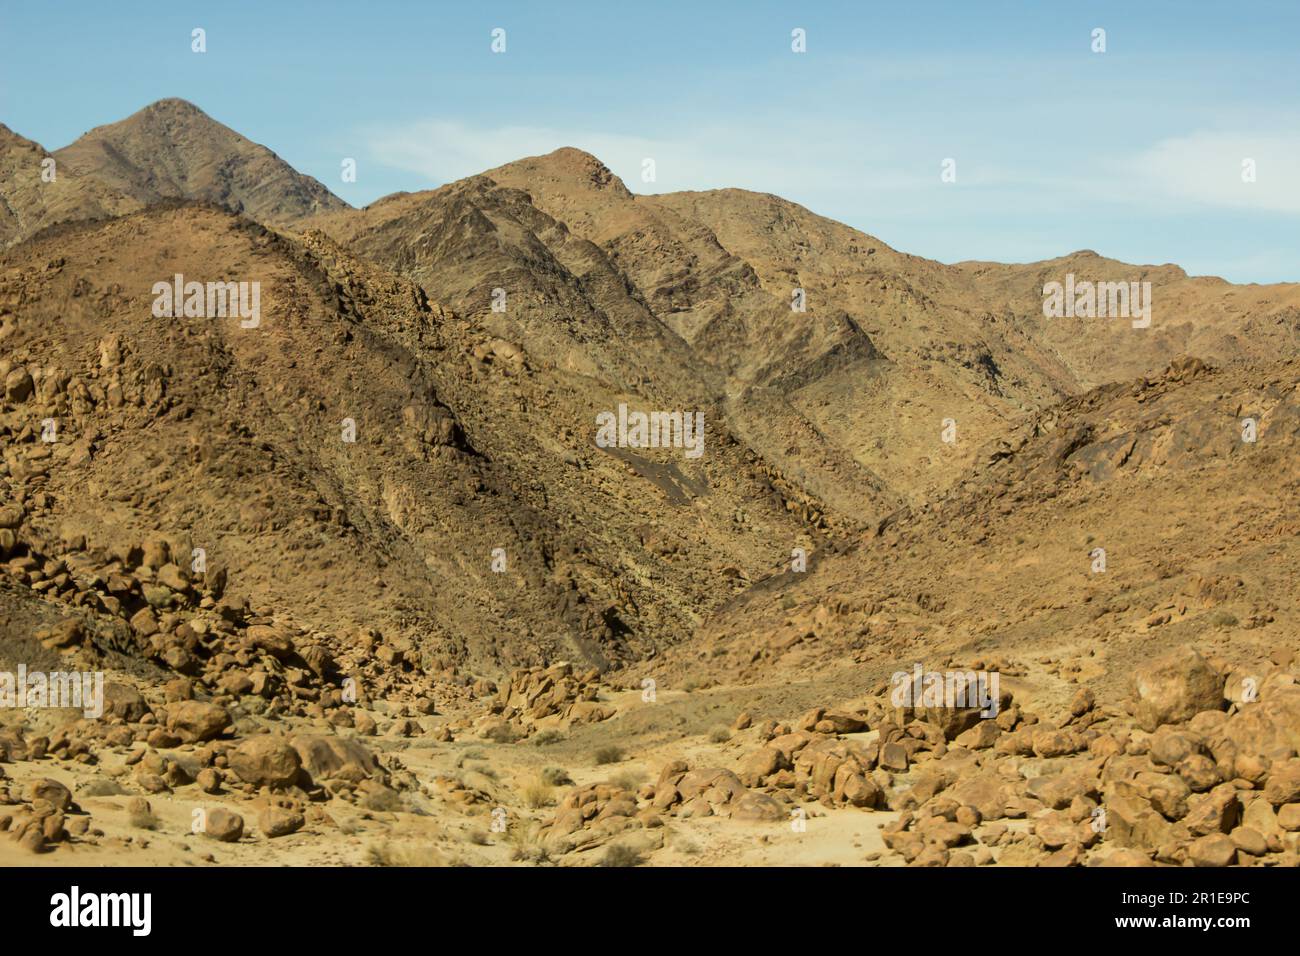 Le montagne apparentemente aride, disseminate di rocce, del complesso Igneous Richtersveld nella Namibia meridionale. Foto Stock